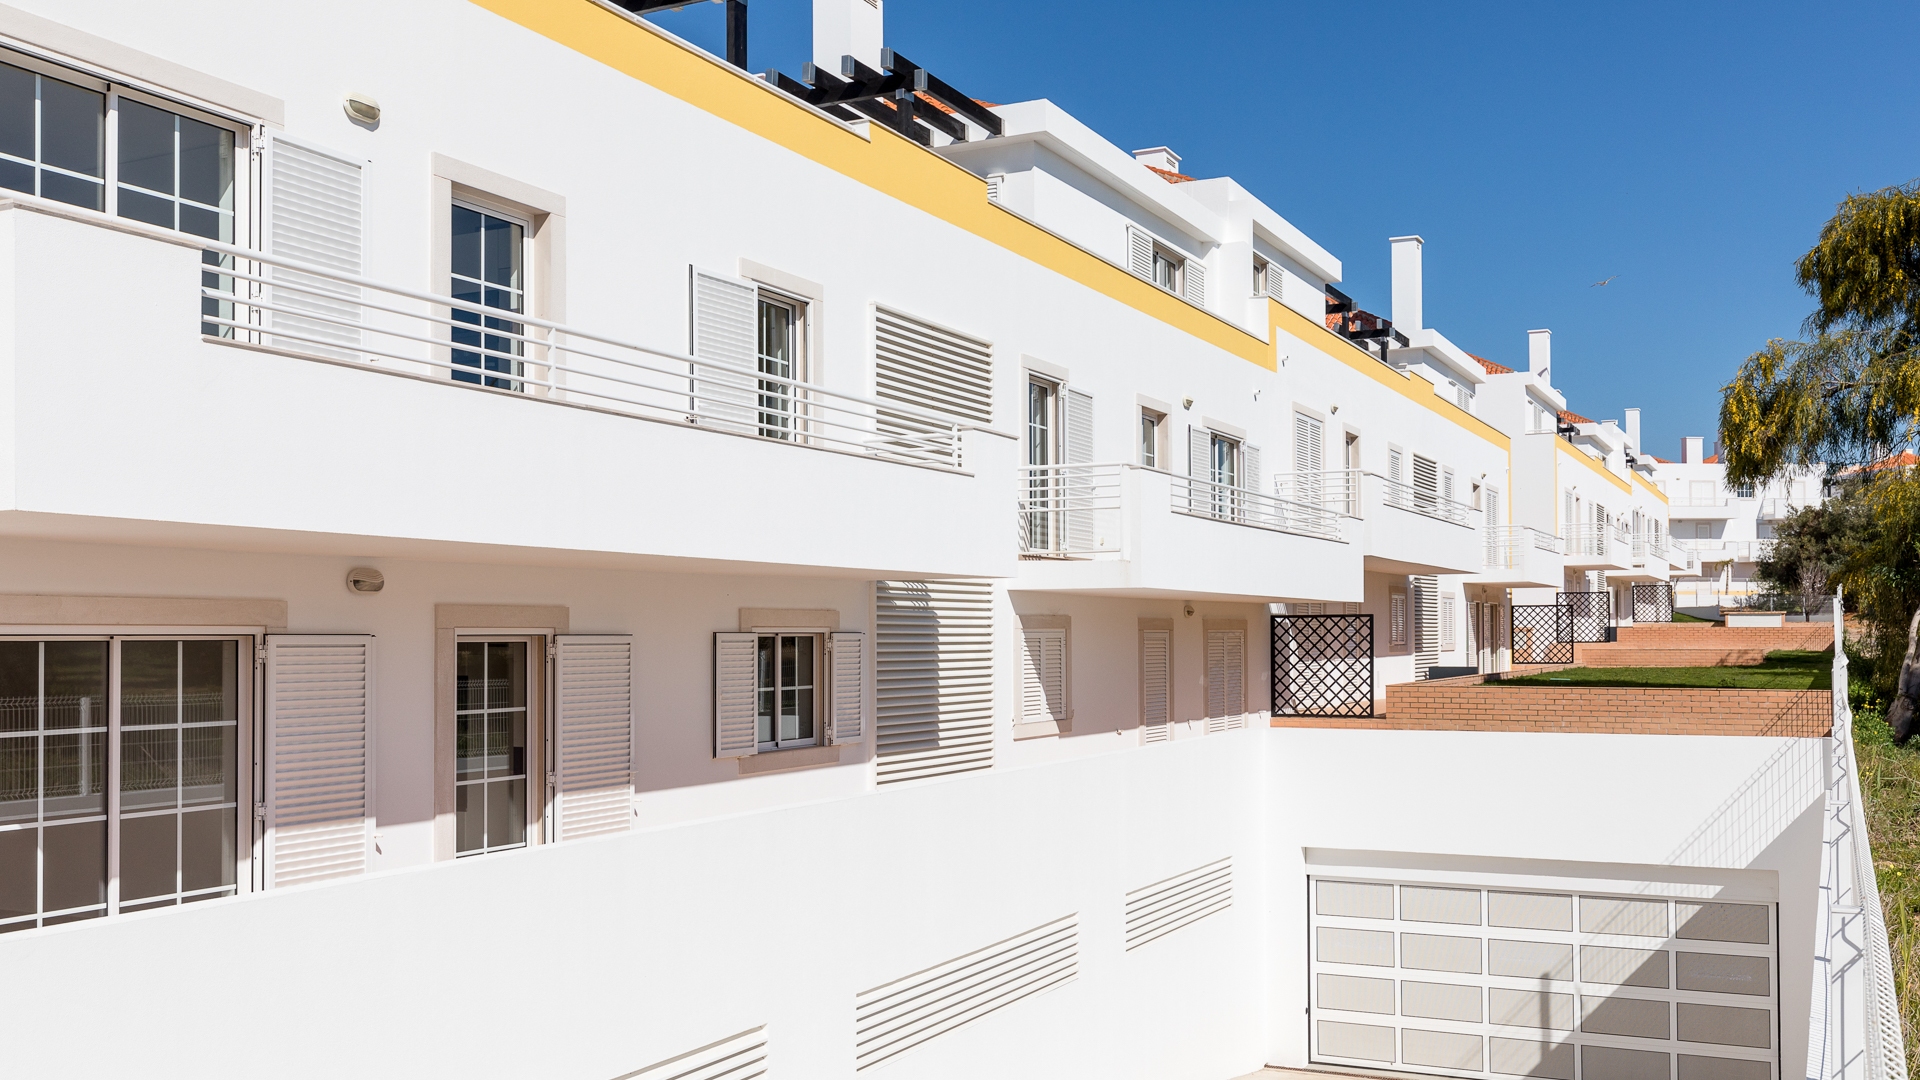 2-SZ-Maisonette-Wohnung mit Garage in hervorragender Lage, Cabanas de Tavira | TV1402 Wir freuen uns, Ihnen eine Reihe von Studio-, 1-SZ- und 2-SZ-Wohnungen in Cabanas de Tavira anbieten zu können. Diese Wohnungen verfügen über private Garagen und in einer ruhigen Wohngegend nur wenige Schritte vom Strand von Cabanas entfernt. Hervorragend geeignet für den eigenen Urlaub oder zur Vermietung.